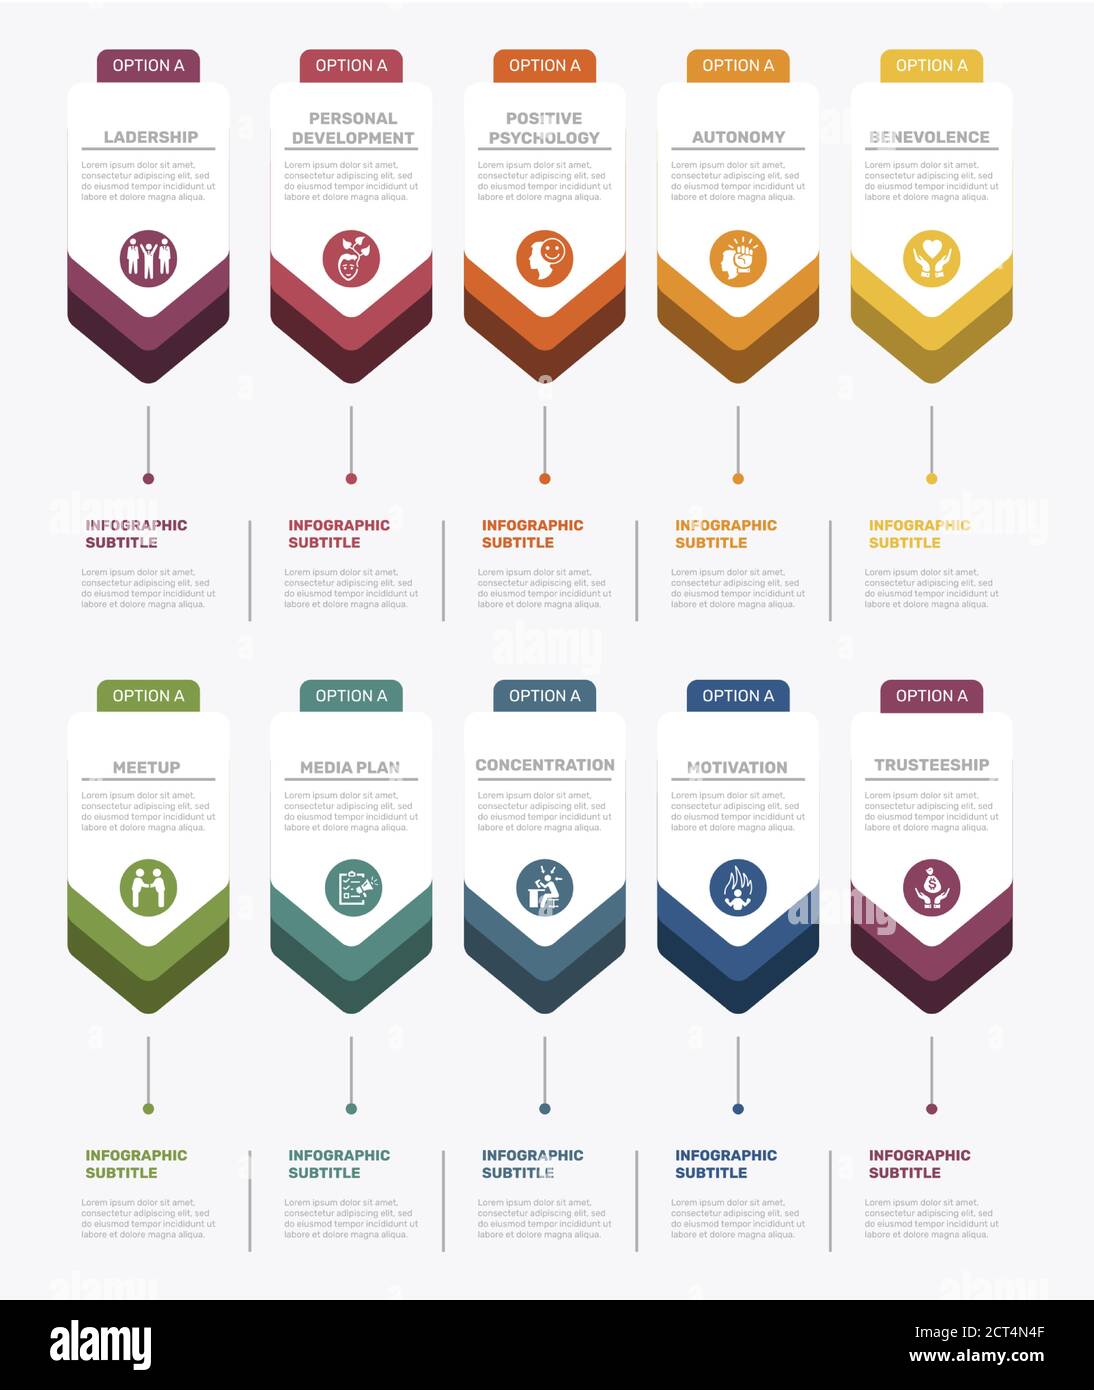 Modello di gestione aziendale infografica. Icone in colori diversi. Includere la leadership, lo sviluppo personale, la psicologia positiva, l'autonomia e. Illustrazione Vettoriale